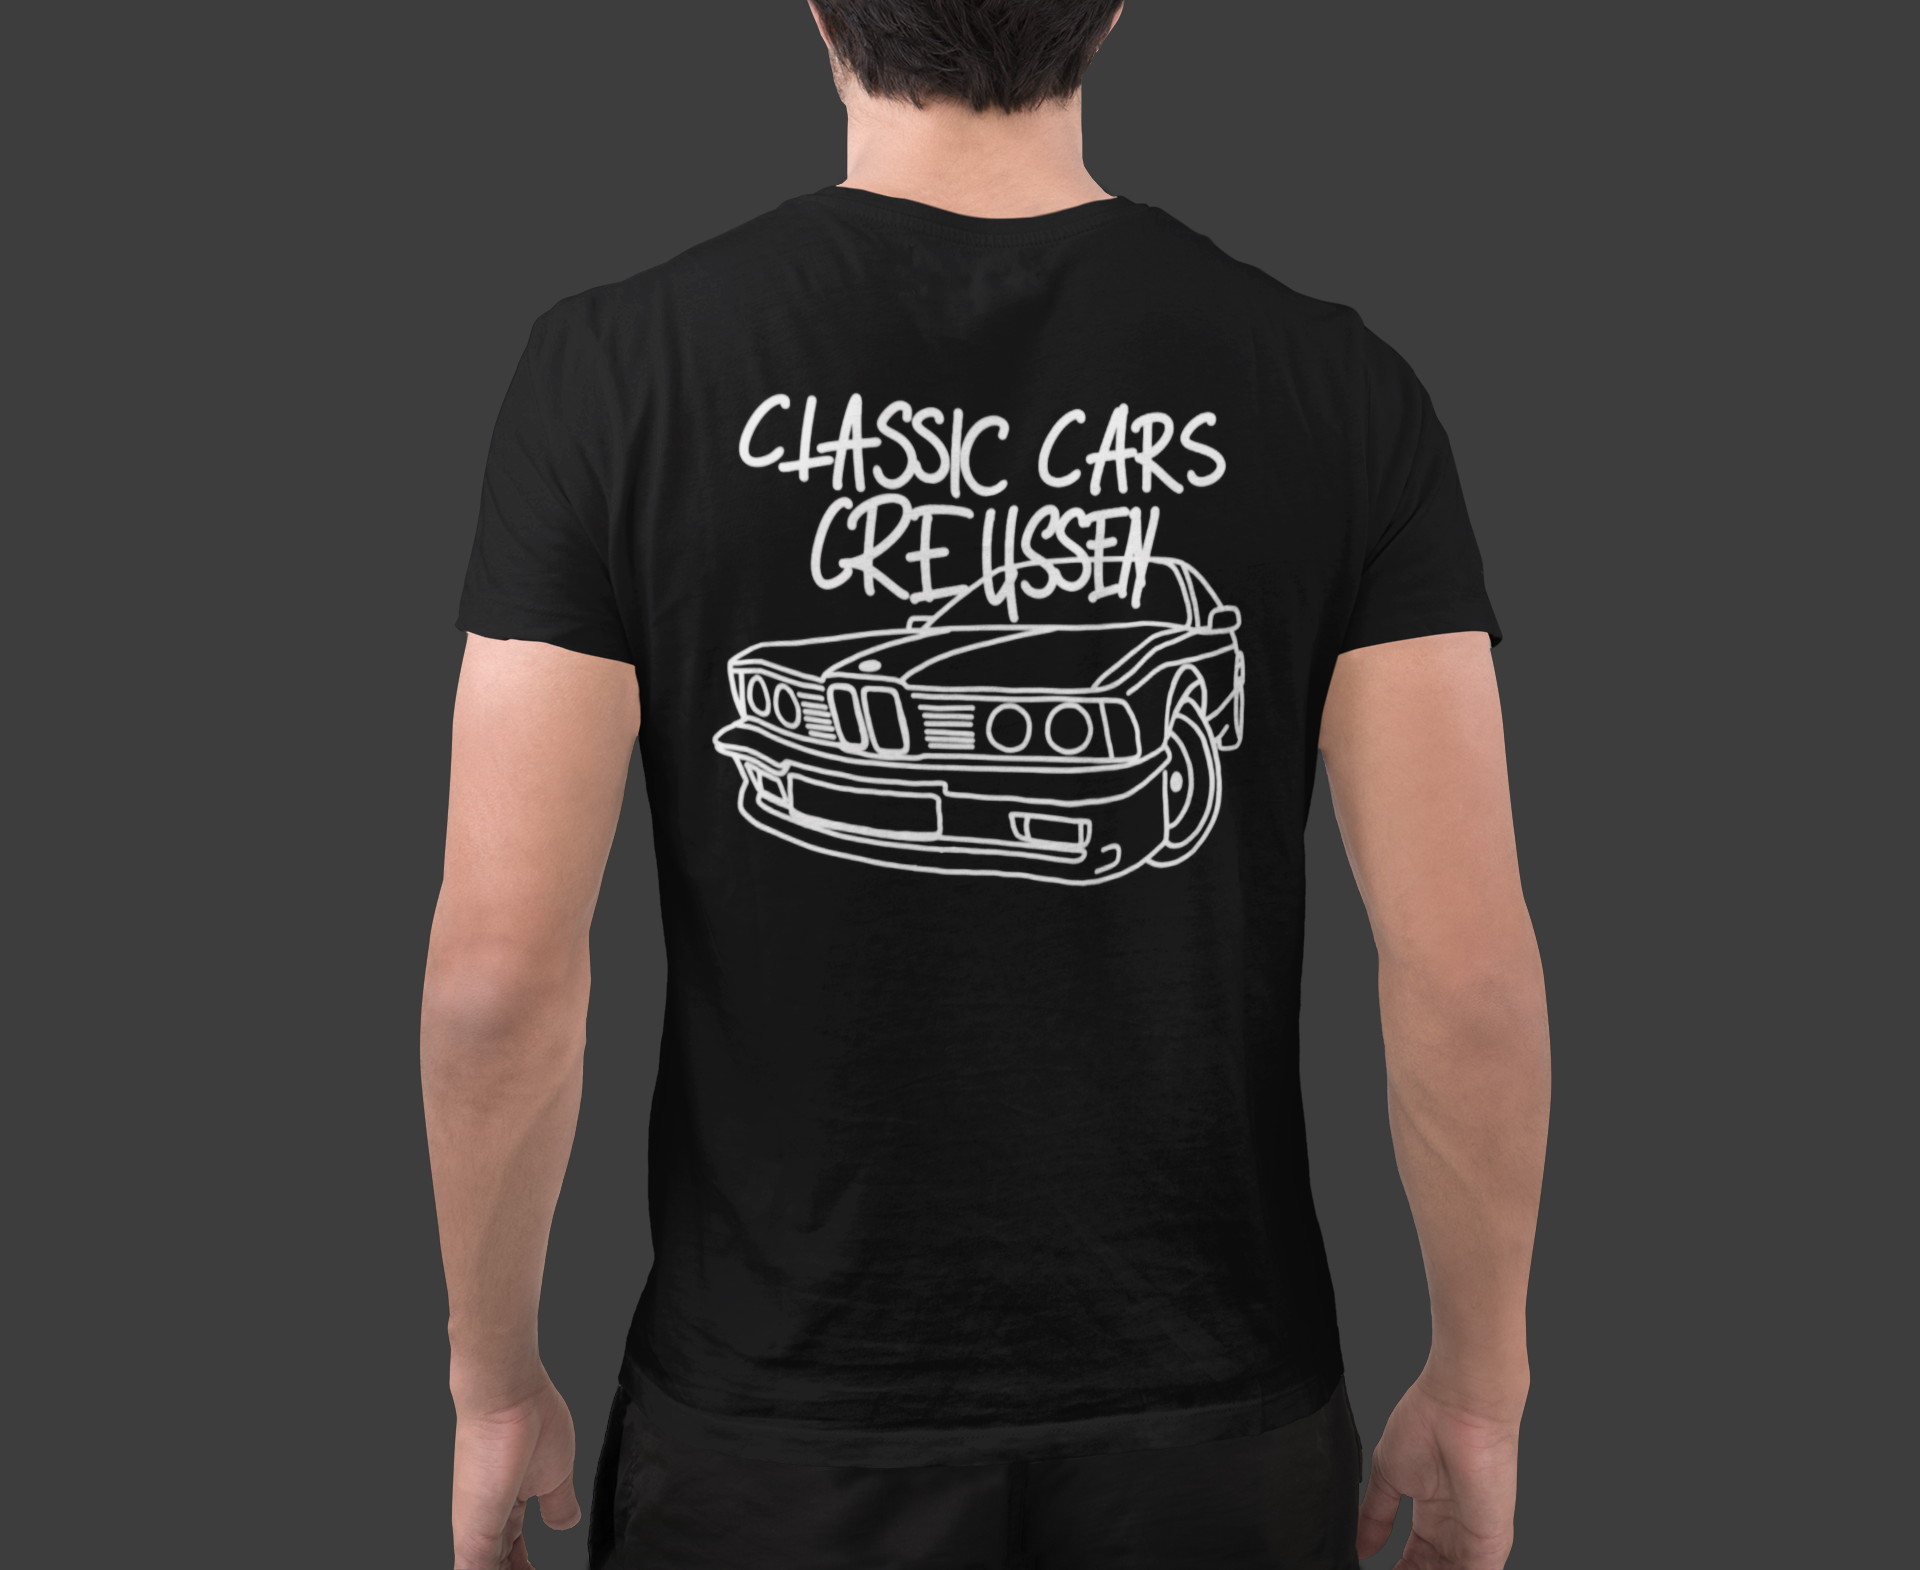 T-Shirt "Classic-Cars-Creussen" schwarz